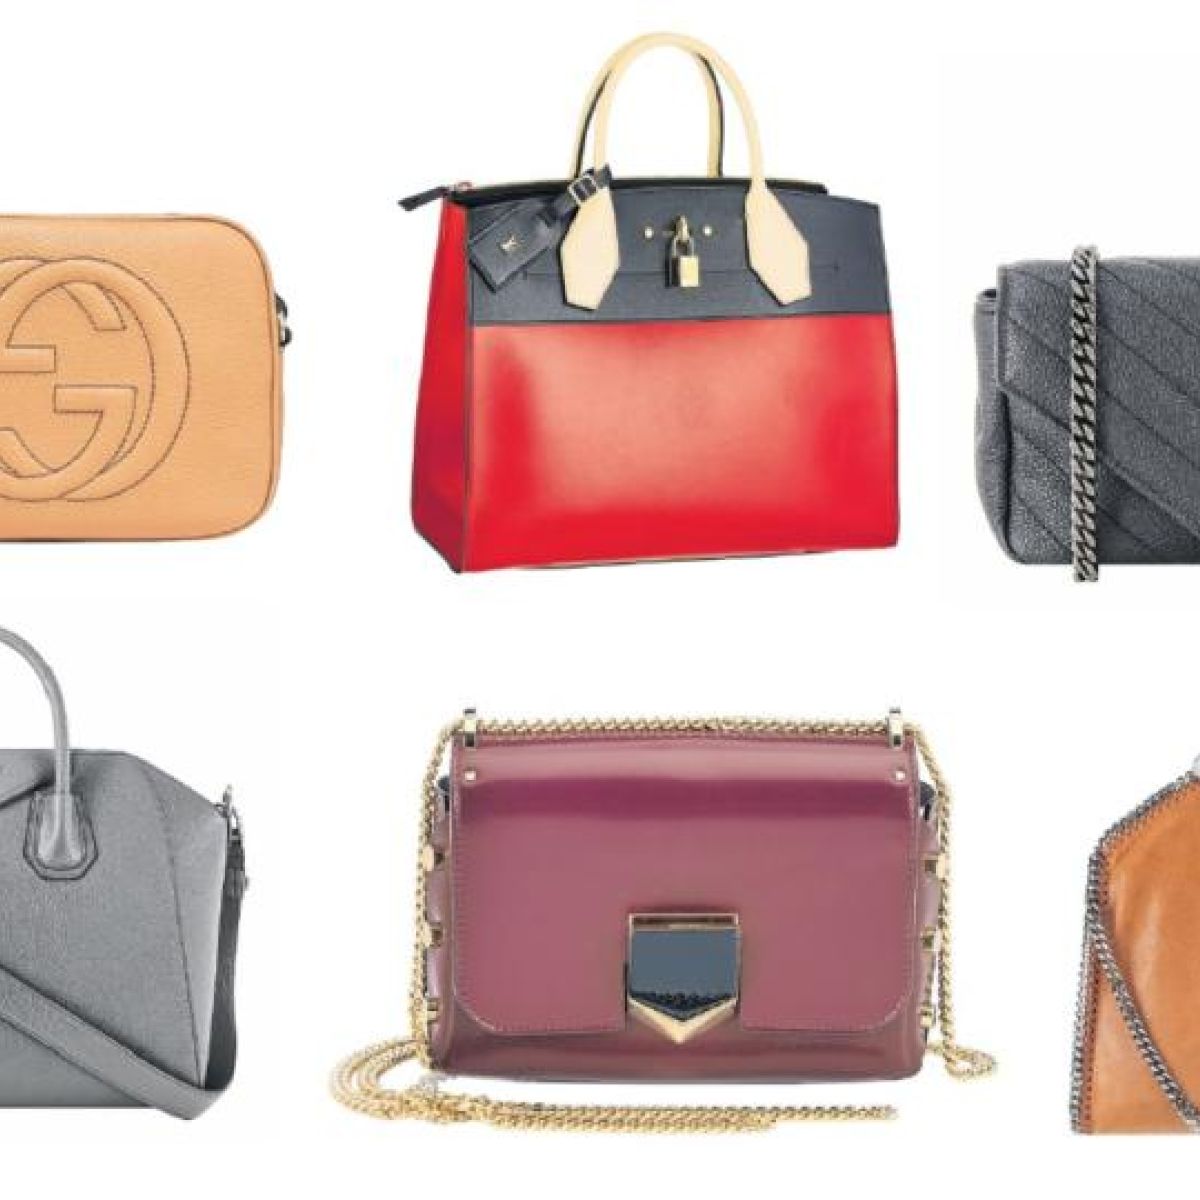 Four steps to designer handbag heaven